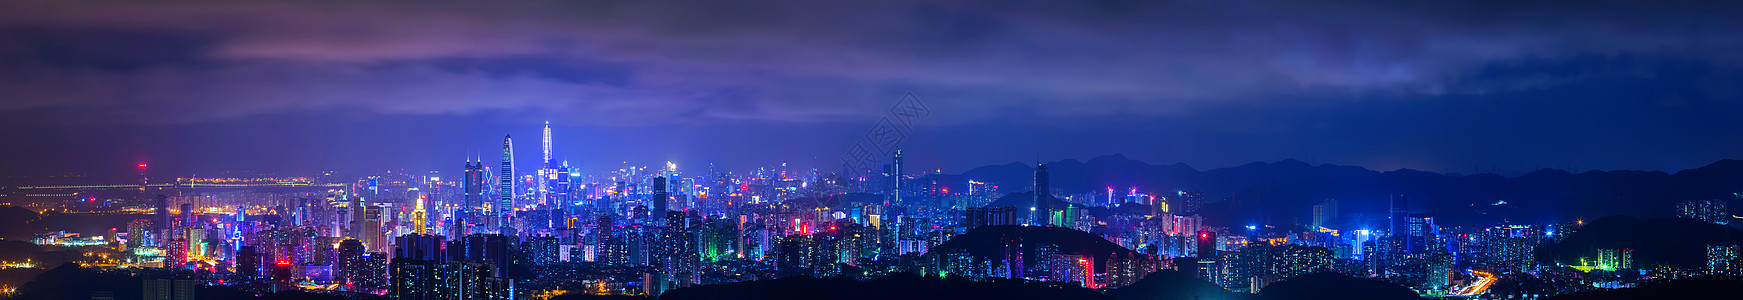 京基一百深圳城市夜景背景